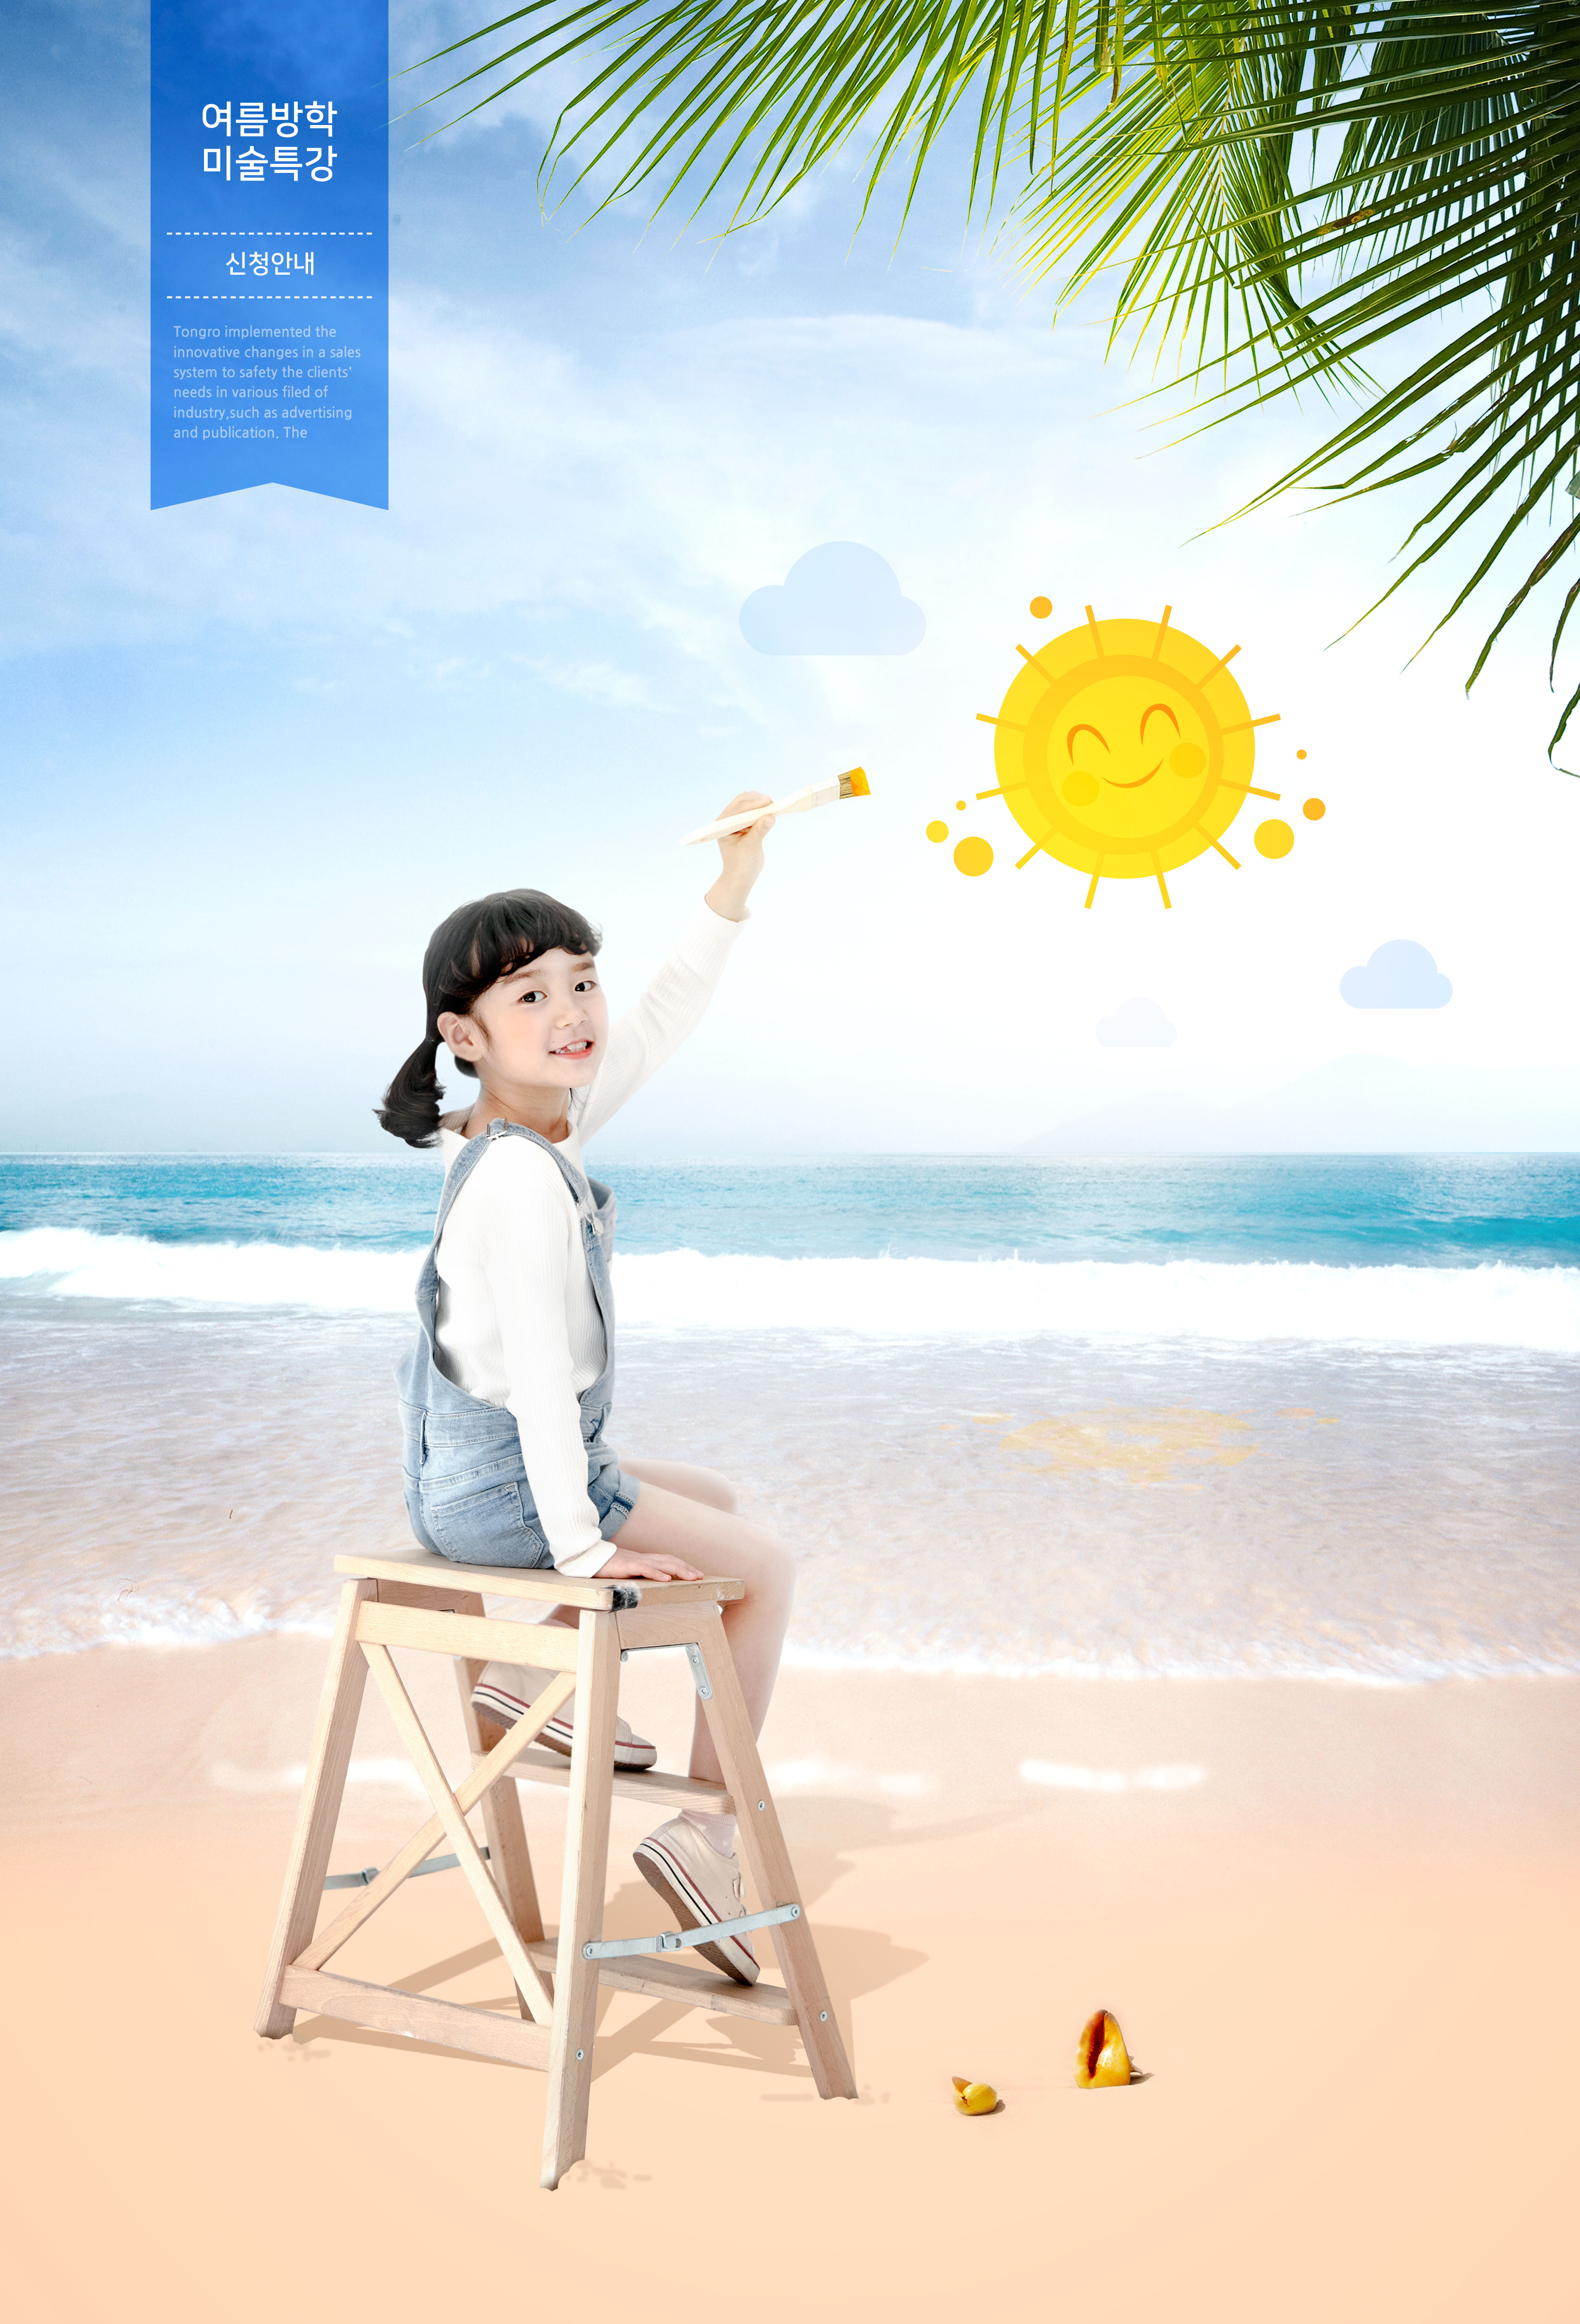 夏季海边儿童绘画主题海报设计素材插图